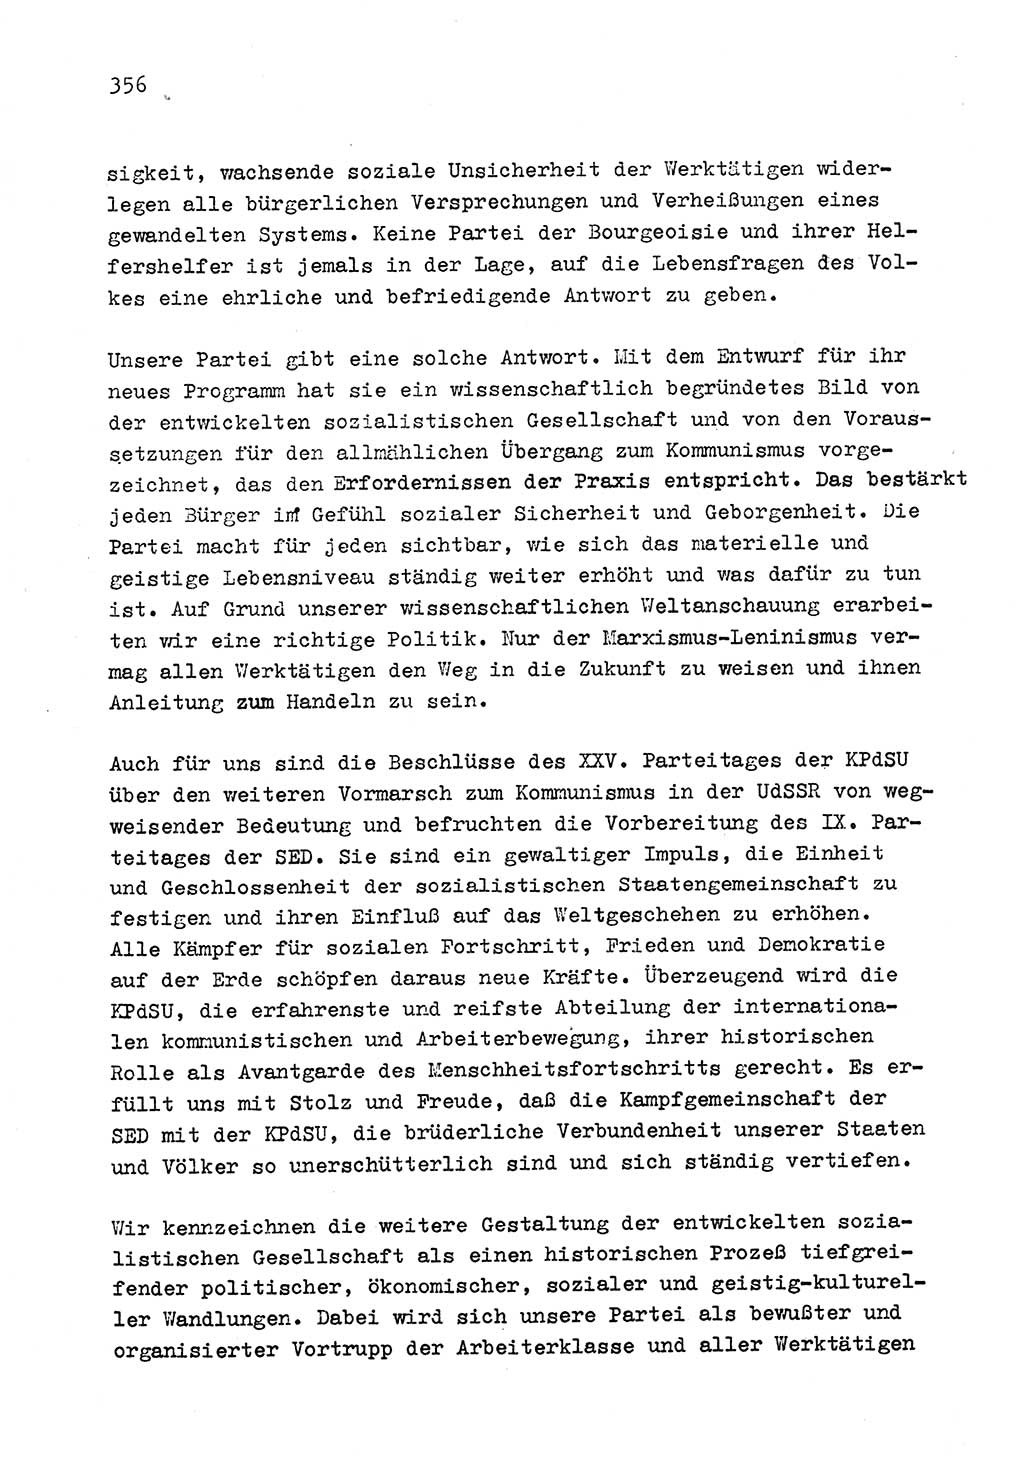 Zu Fragen der Parteiarbeit [Sozialistische Einheitspartei Deutschlands (SED) Deutsche Demokratische Republik (DDR)] 1979, Seite 356 (Fr. PA SED DDR 1979, S. 356)